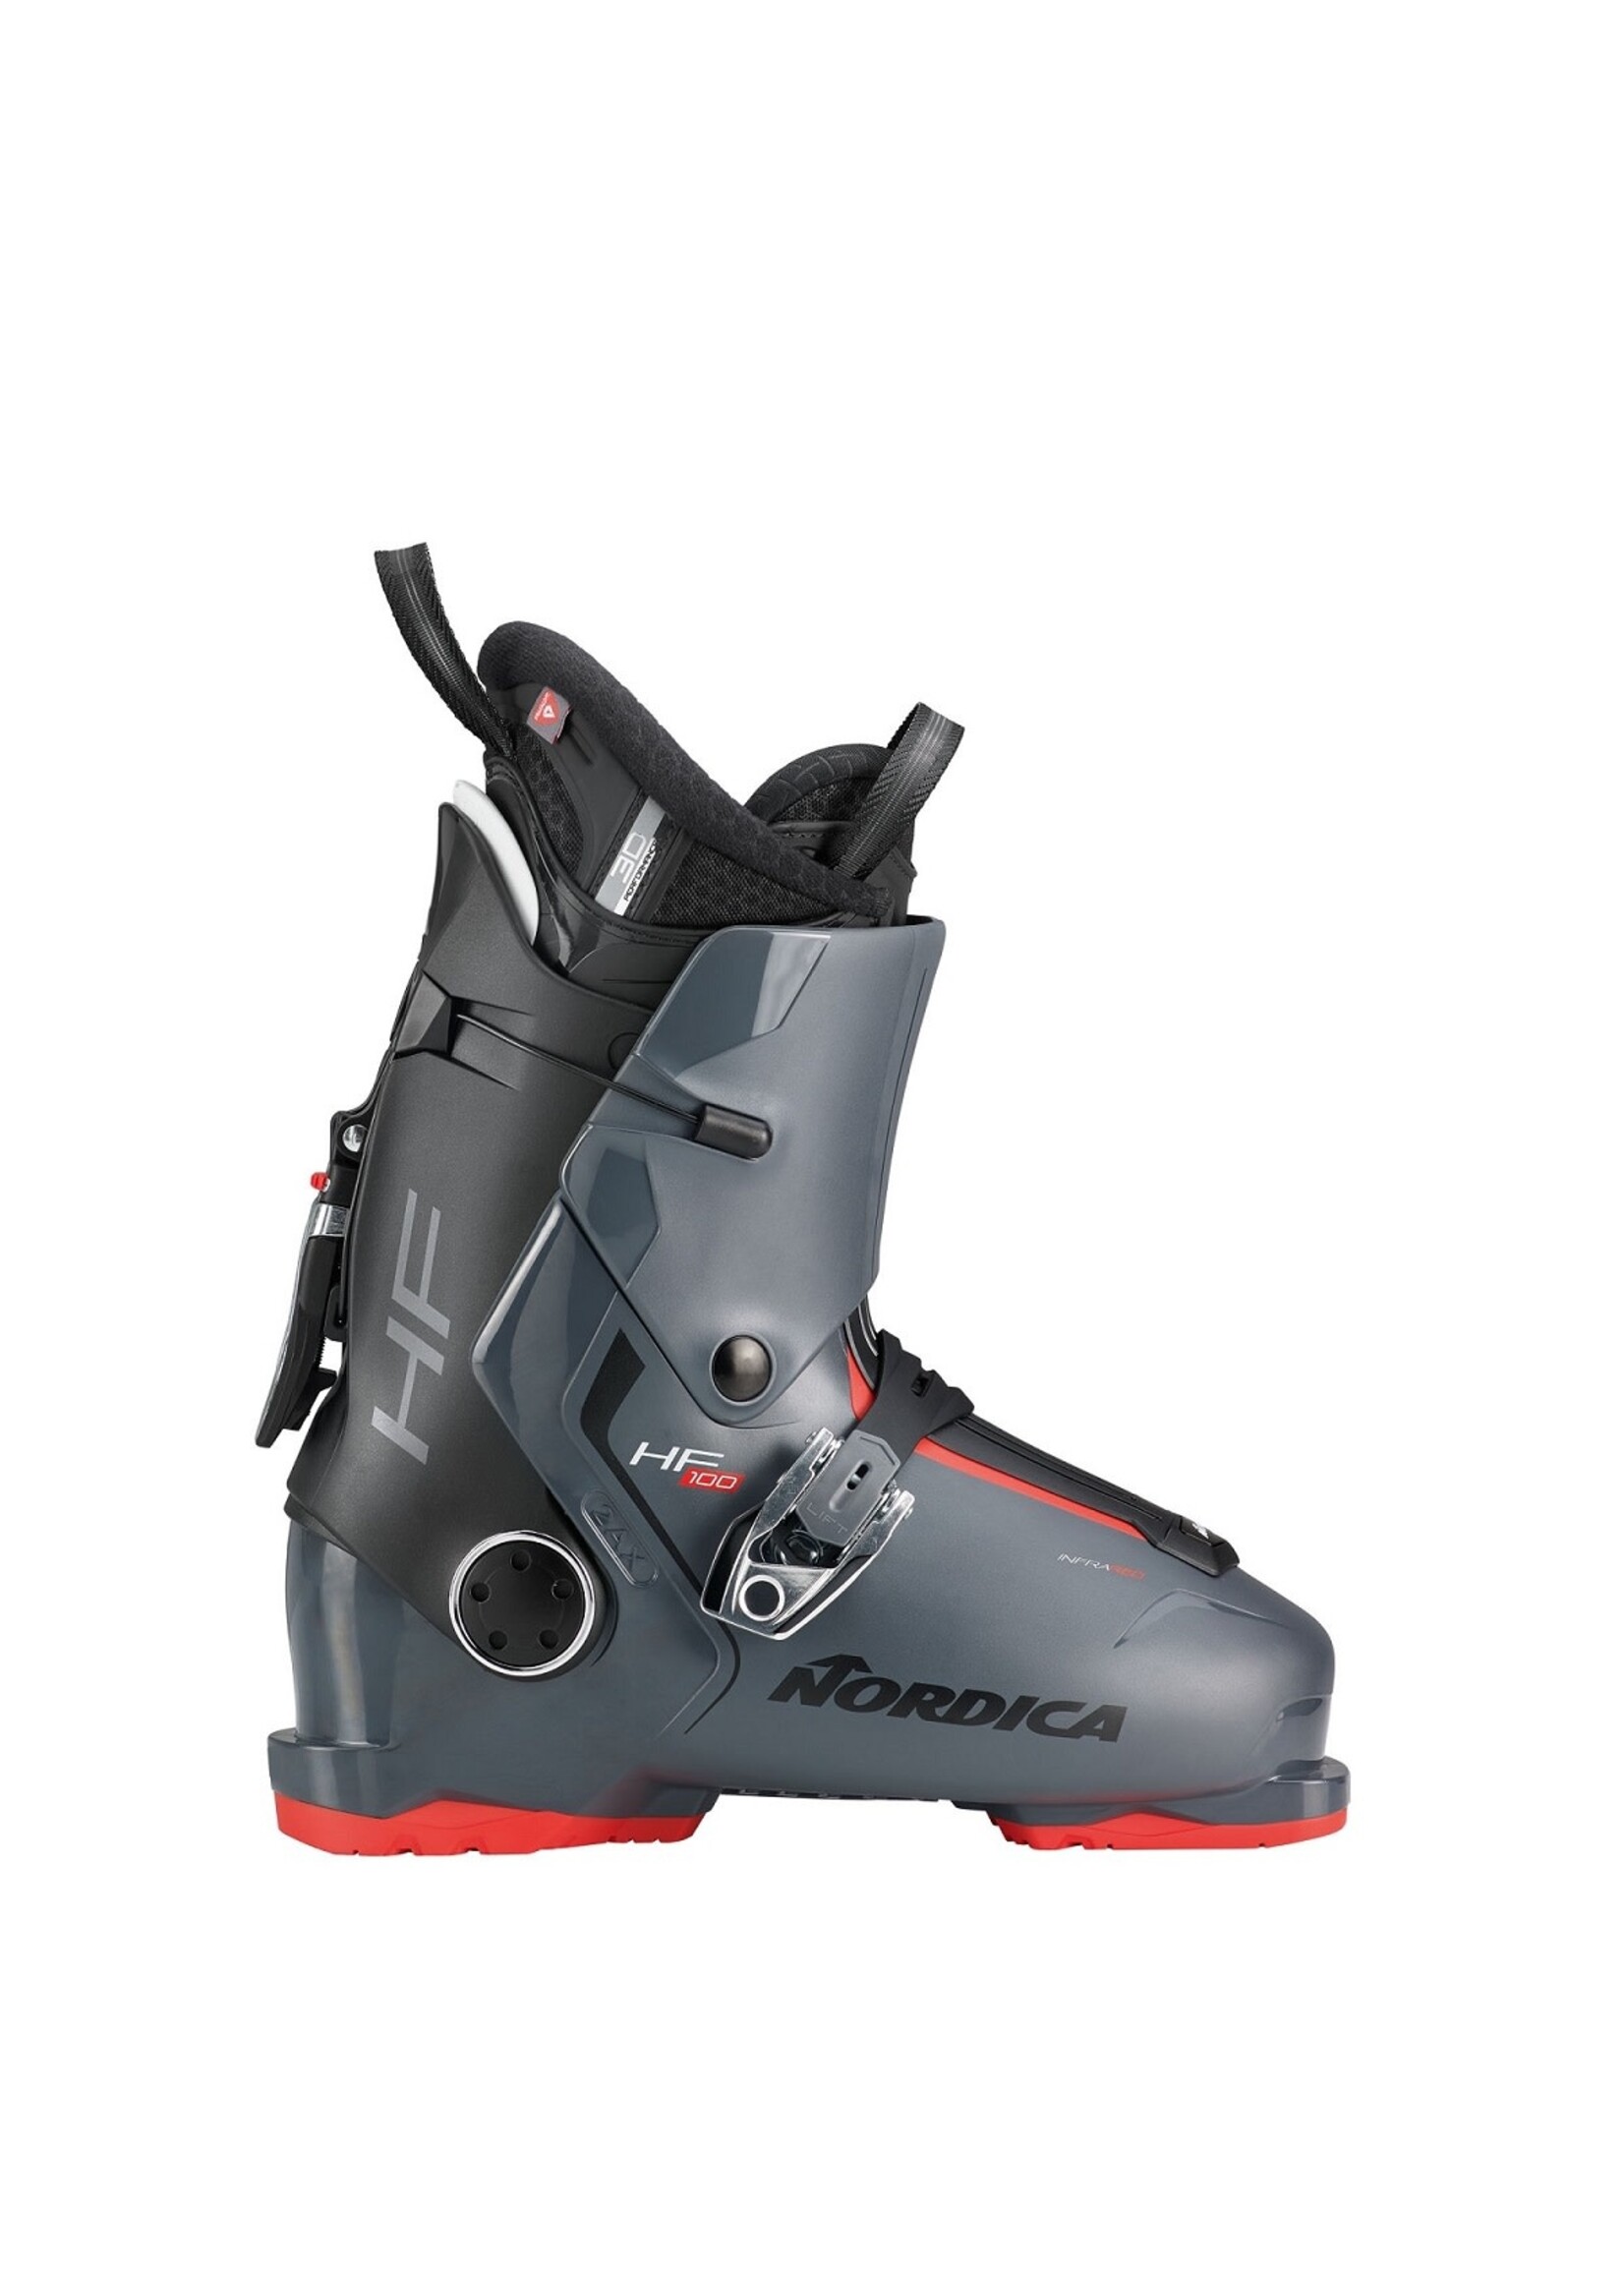 Nordica Nordica HF 100 Ski Boot